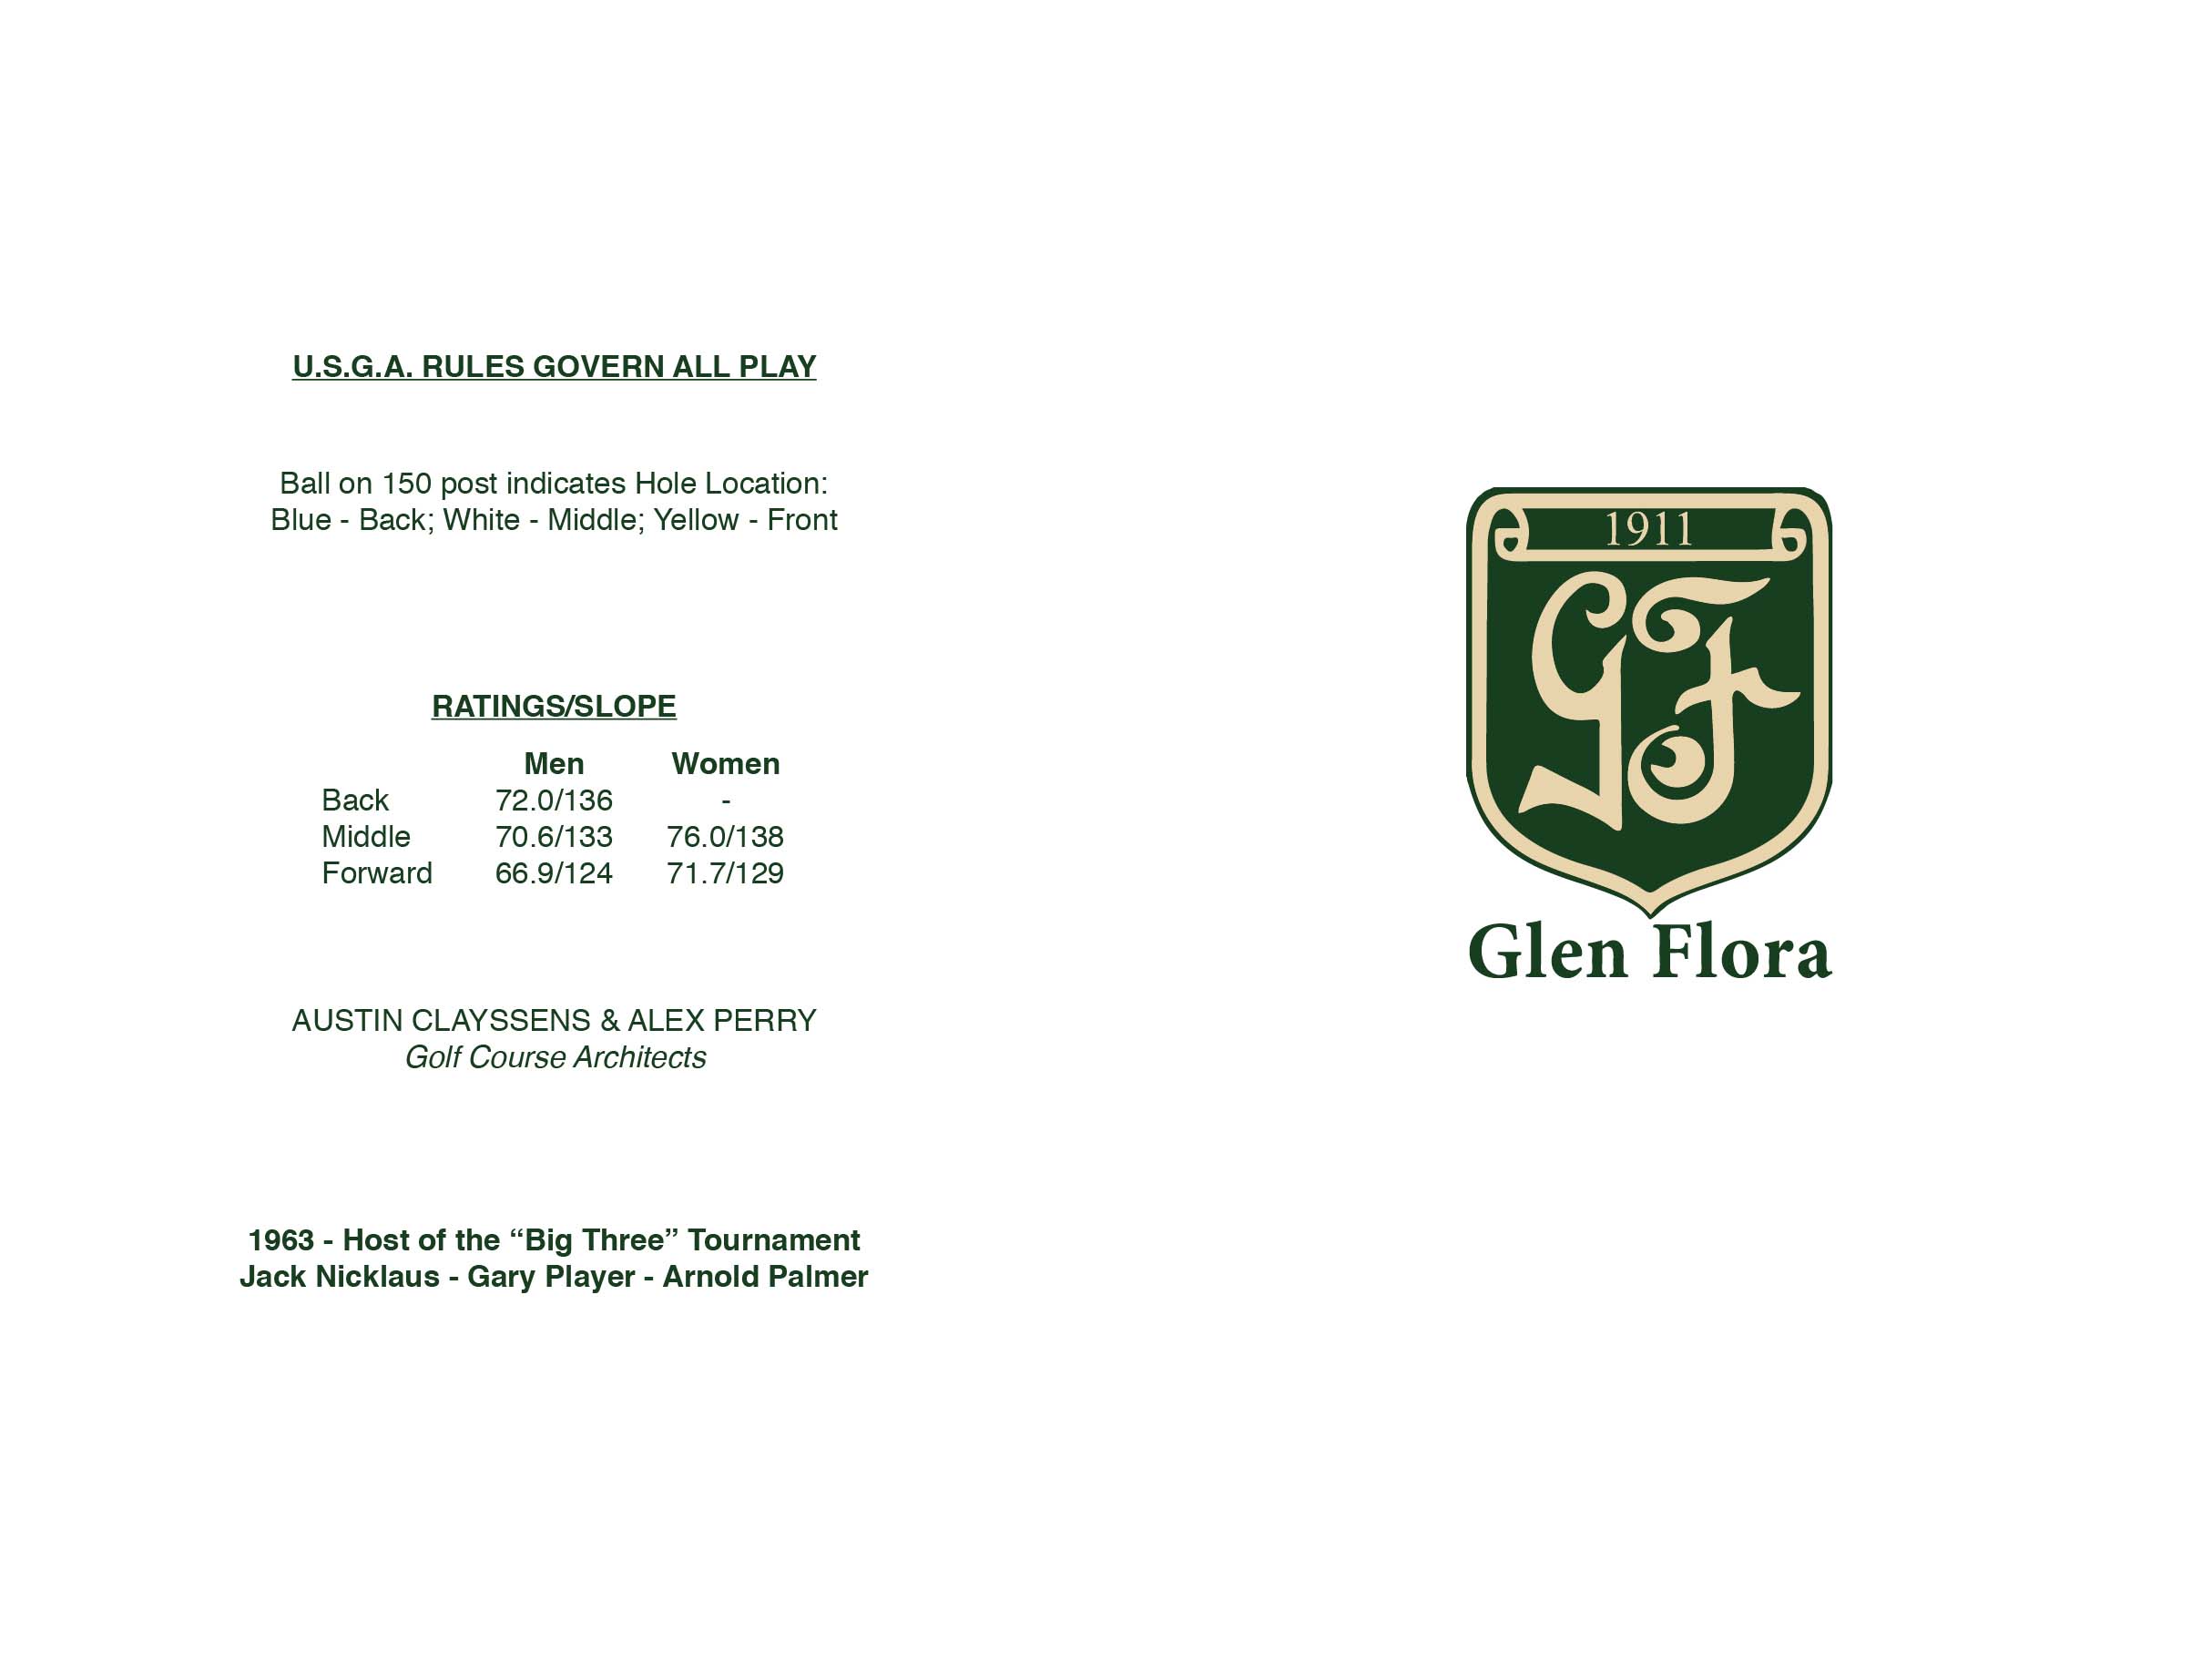 Glen Flora CC